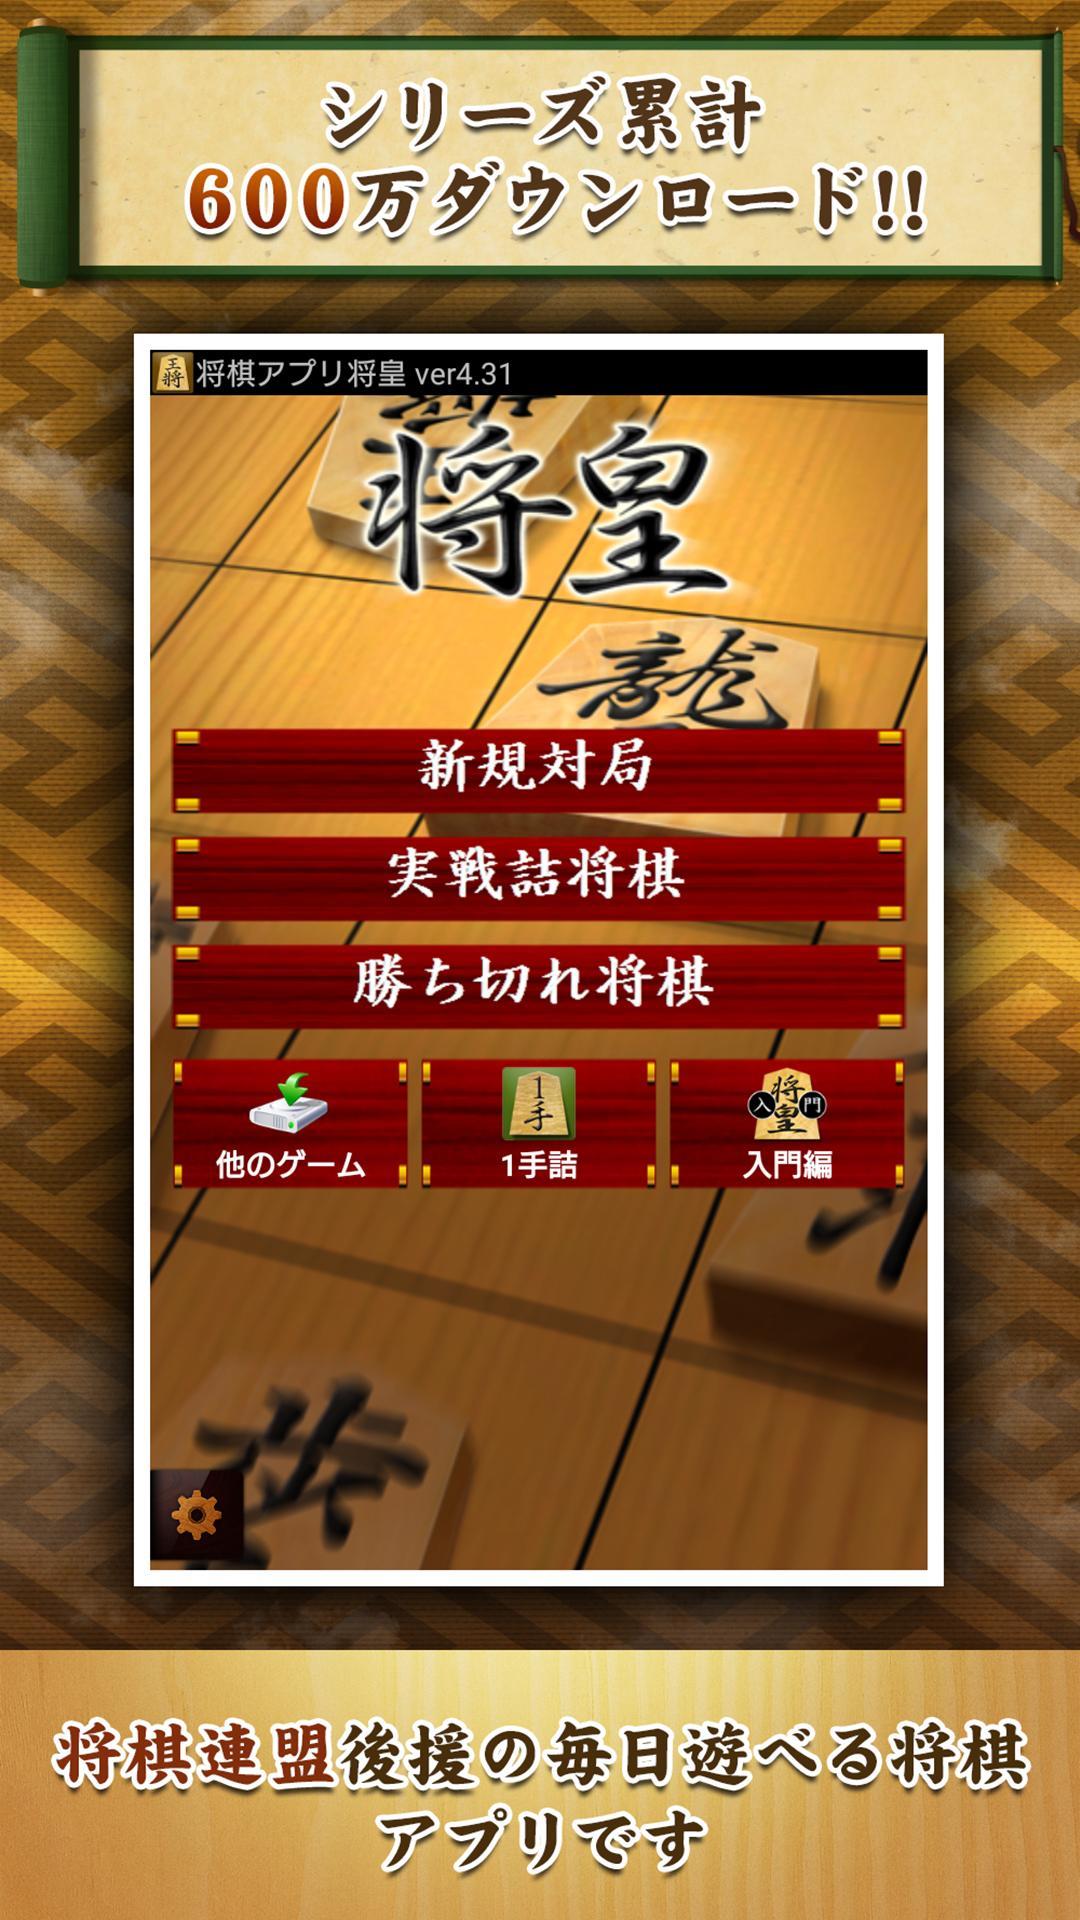 Screenshot 1 of Aplicación Shogi Shoou 6.5